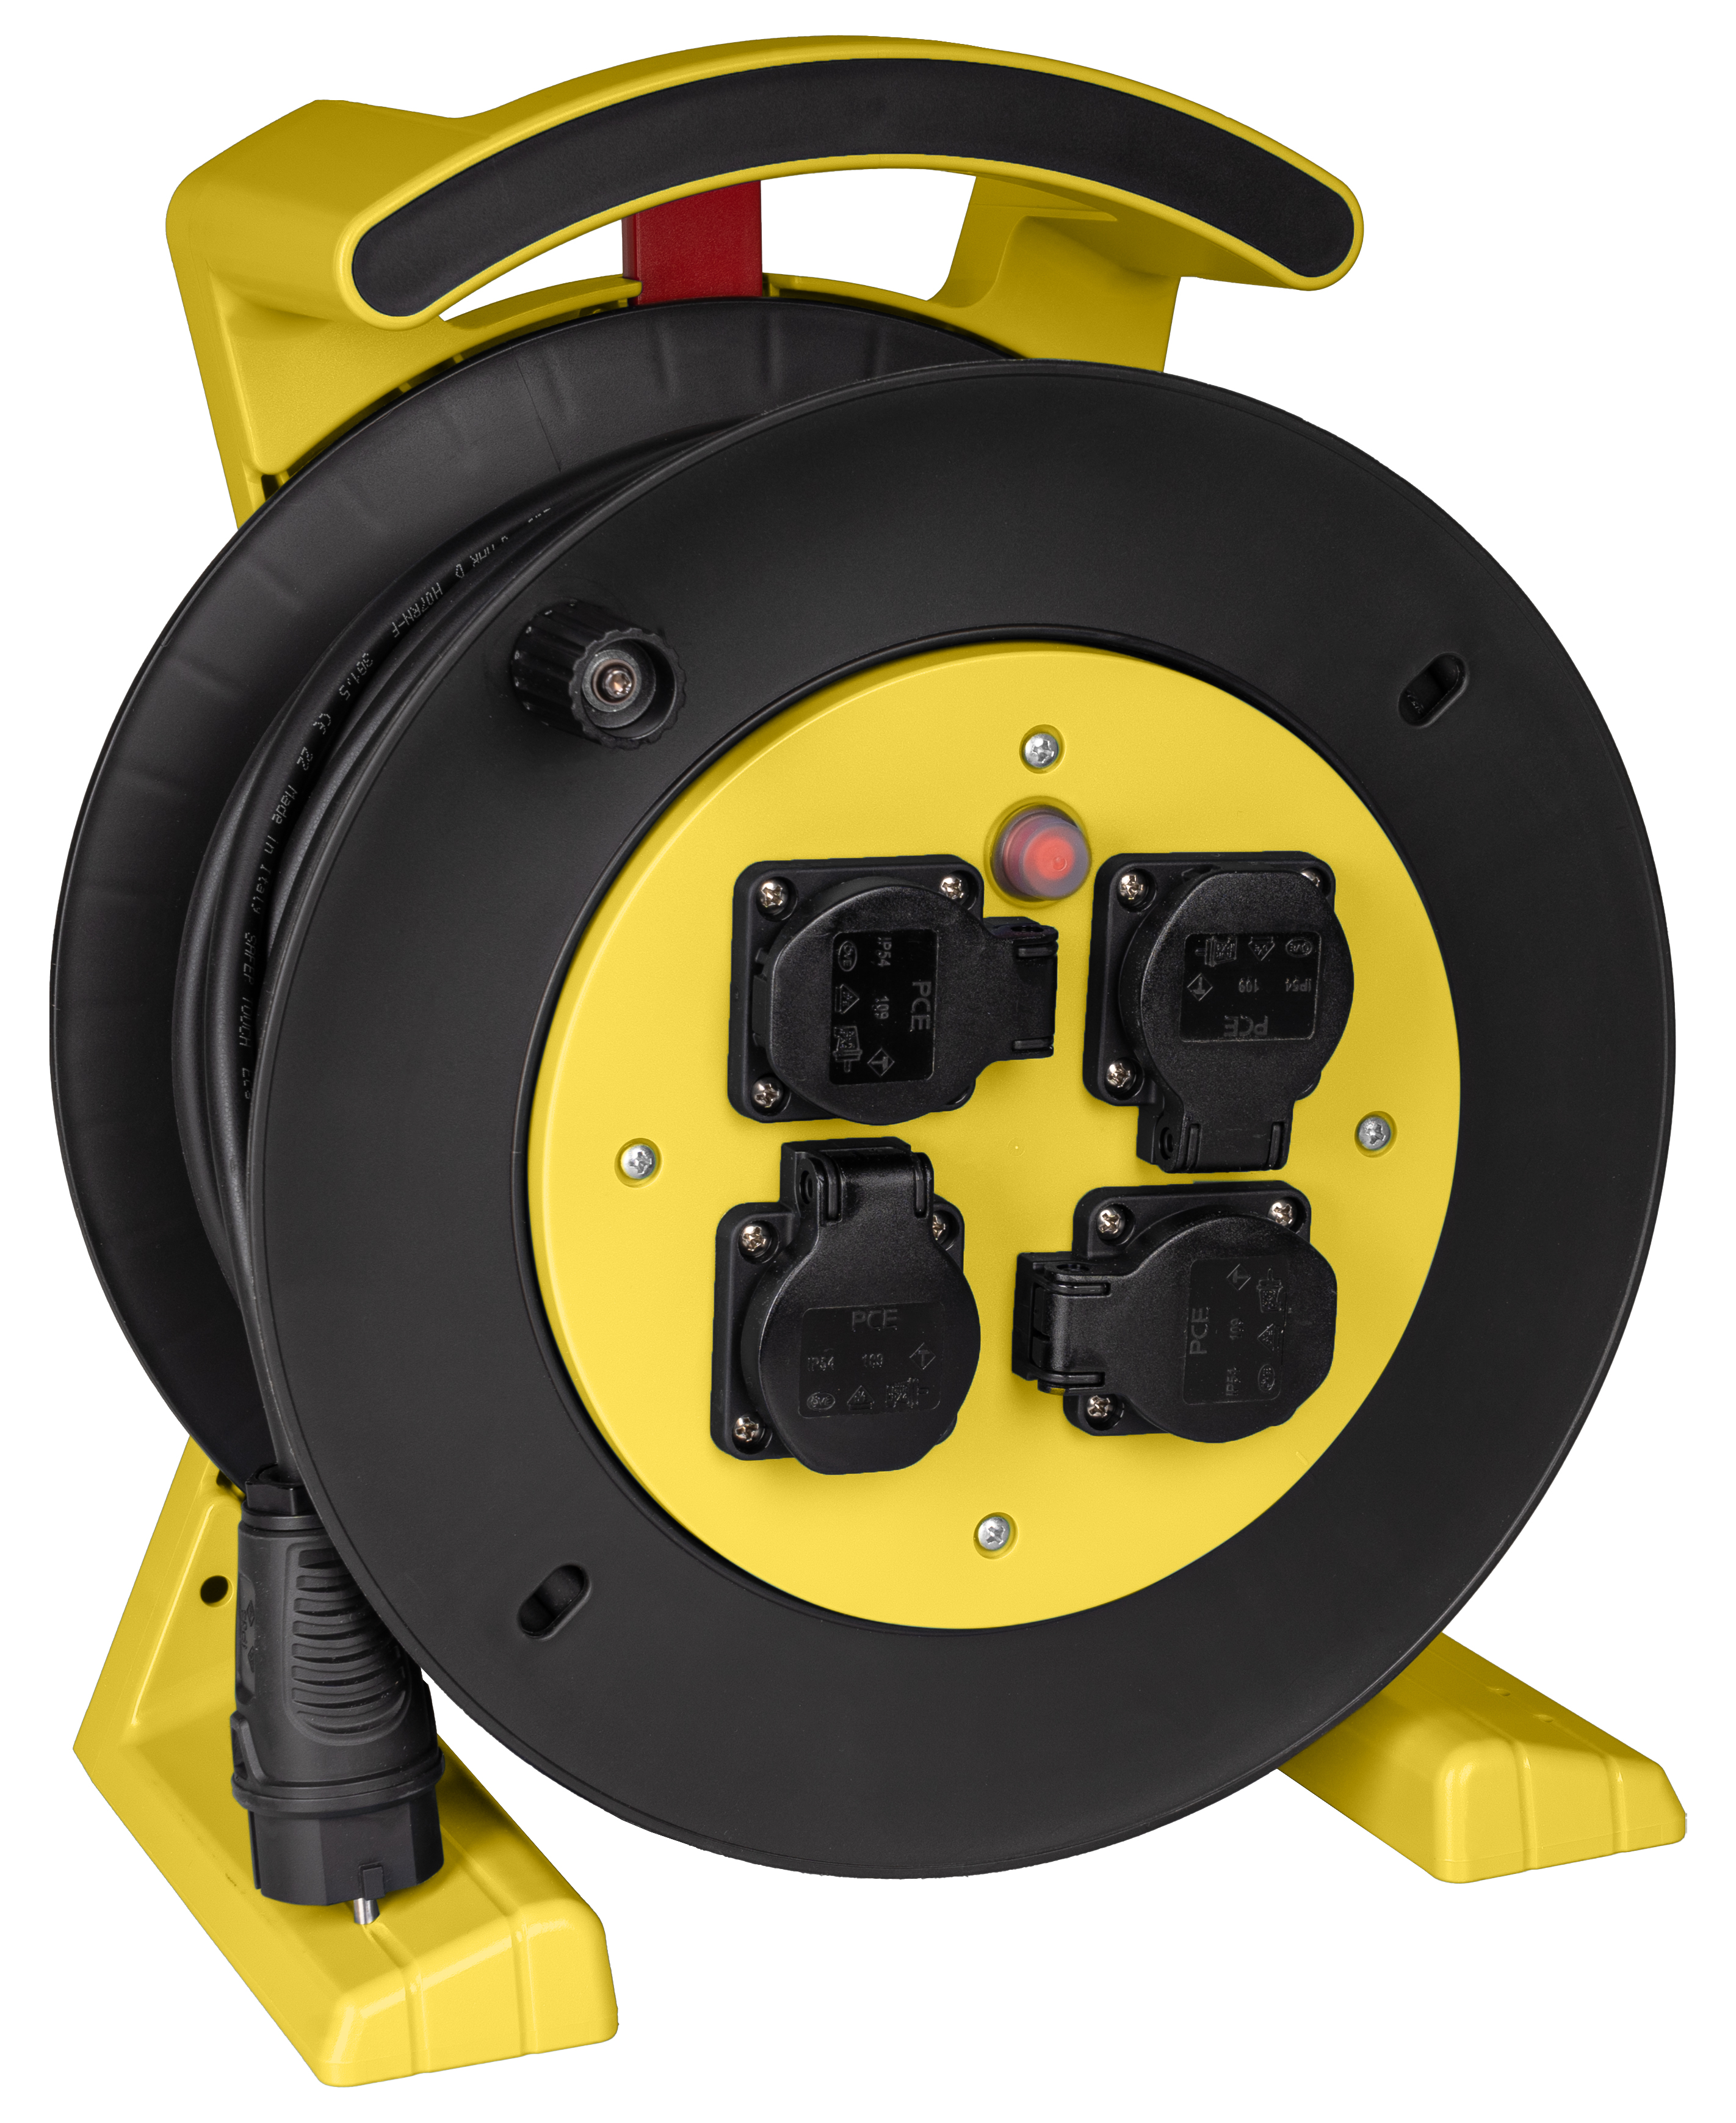 Kabeltrommel gelb-schwarz, 4 x Schutzkontakt-Steckdose, H07RN-F 3 G 2,5 mm², 40 m JUMBO L 2.0